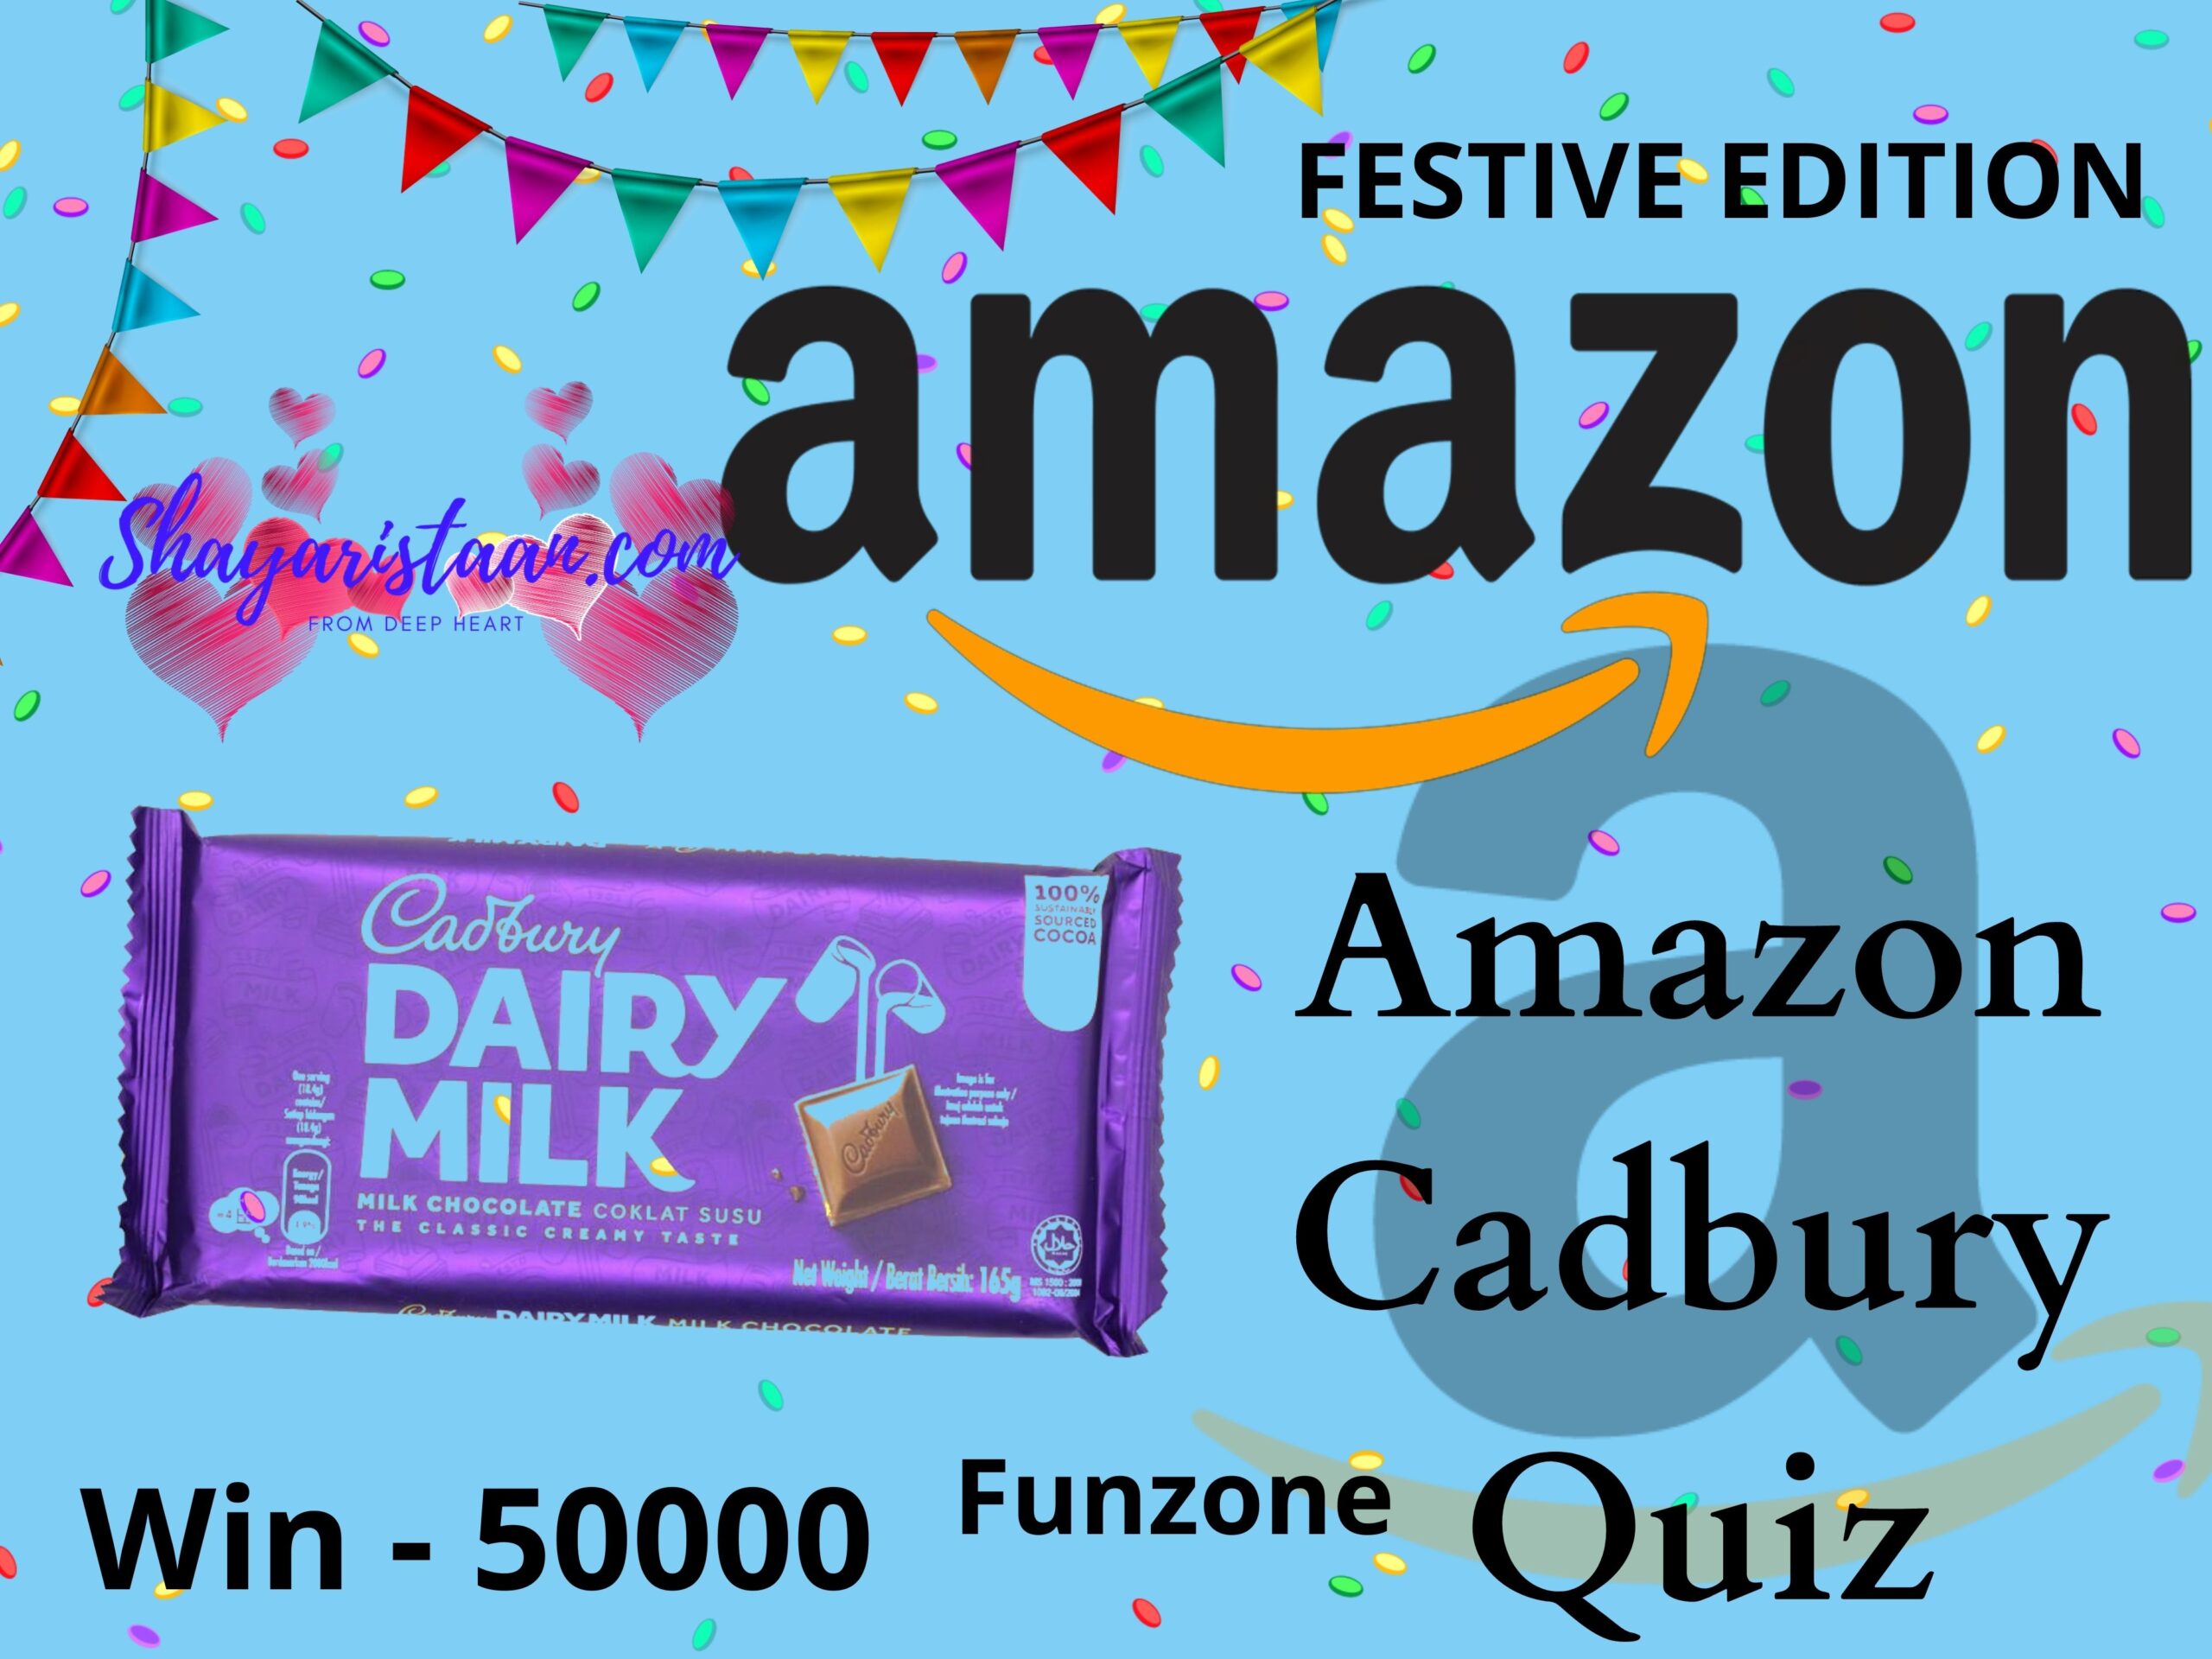 Amazon Cadbury Quiz